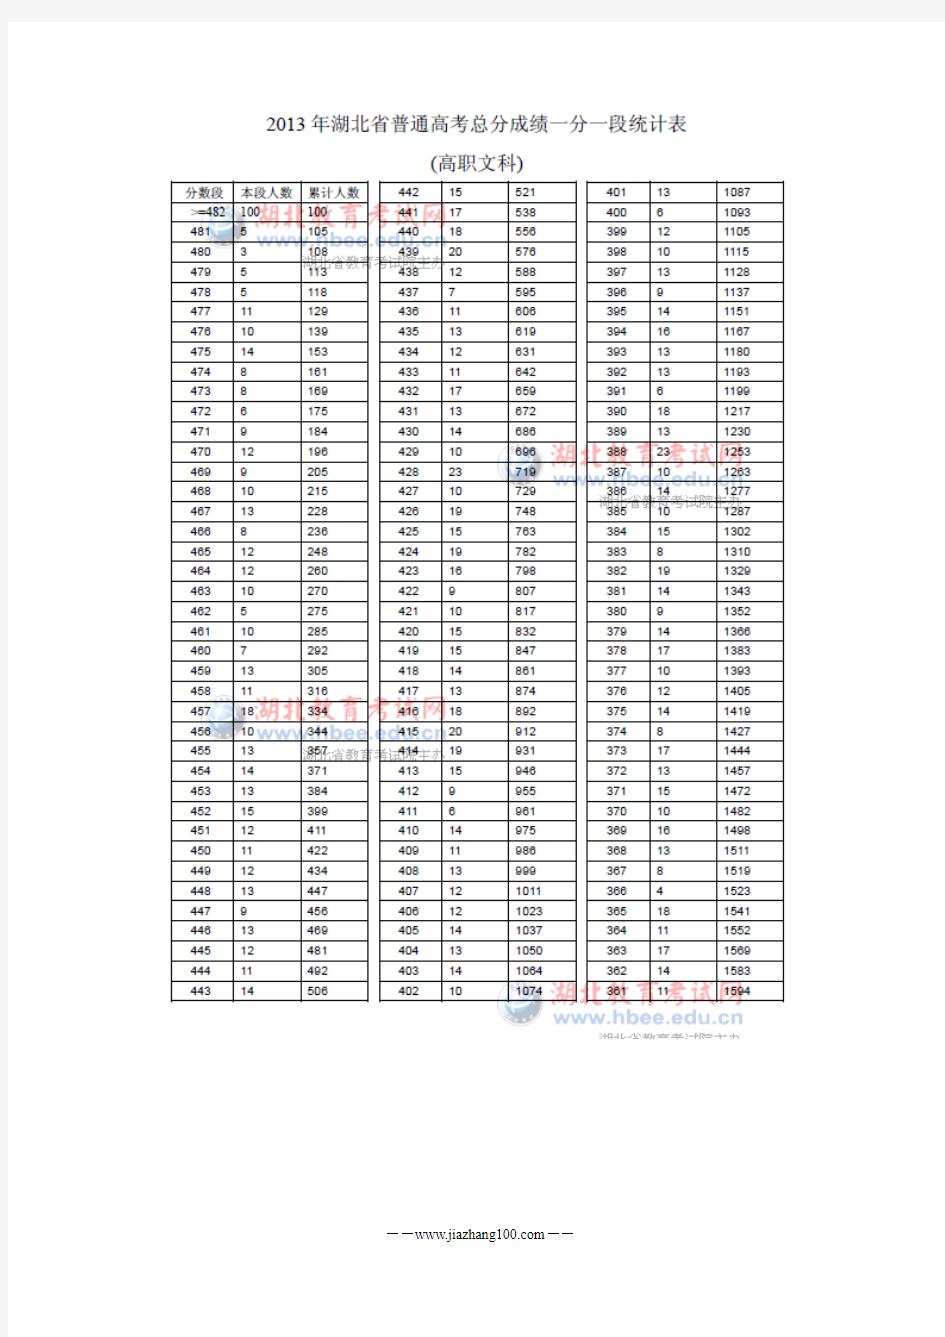 2013年湖北省高考一分一段统计表(高职文科)